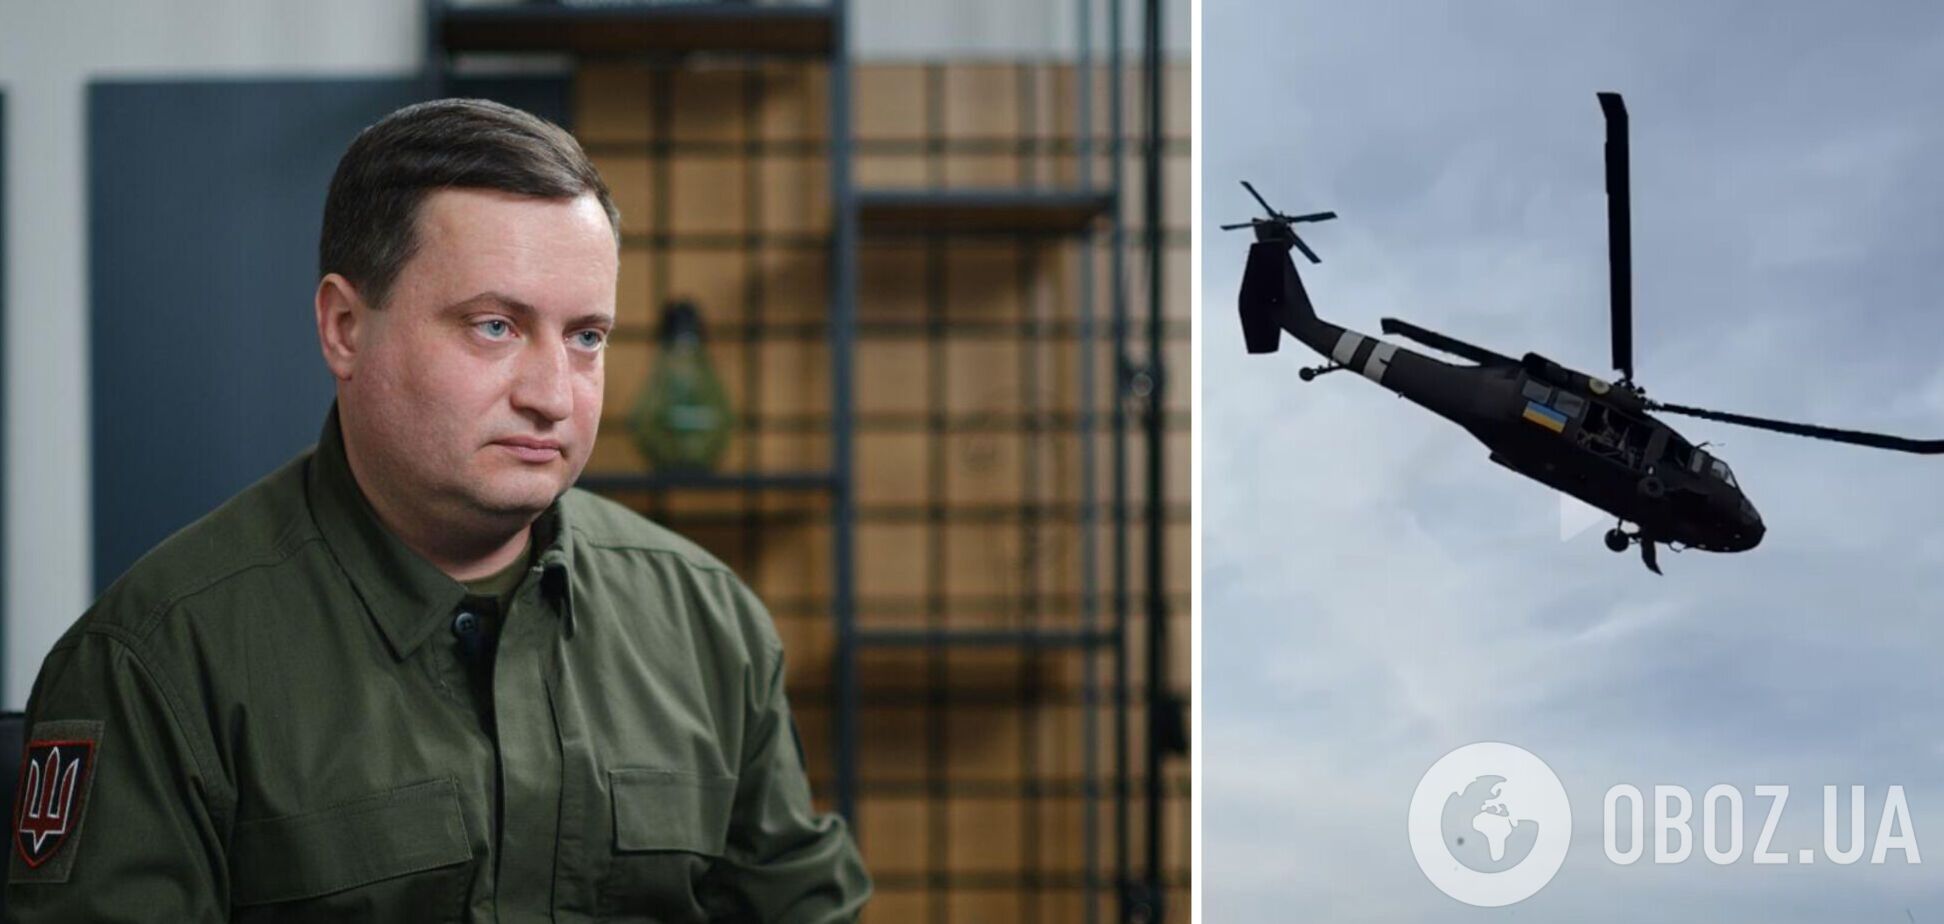 Чергова брехня: у ГУР назвали заяви про збиття гелікоптера Black Hawk фейком